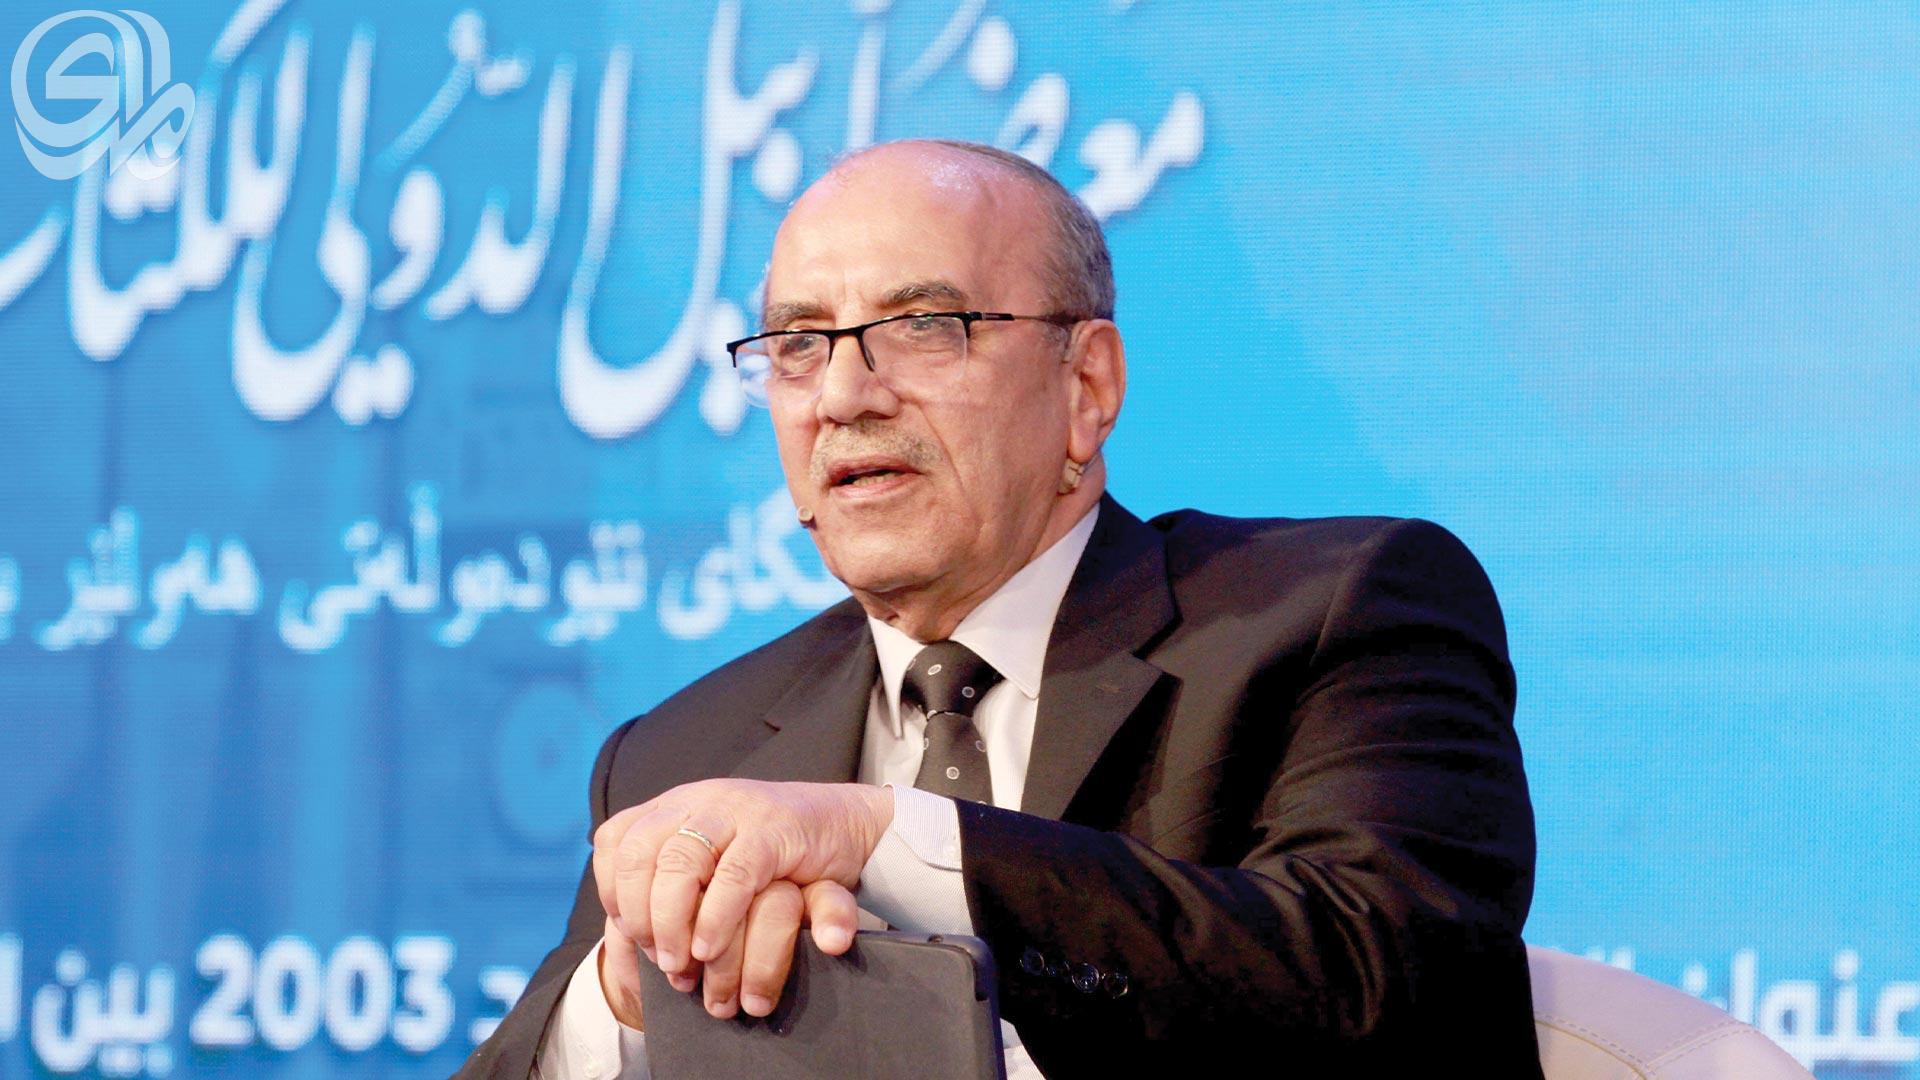 القاضي هادي عزيز: بعض التشريعات تؤثر في دورها الاجتماعي والسياسي